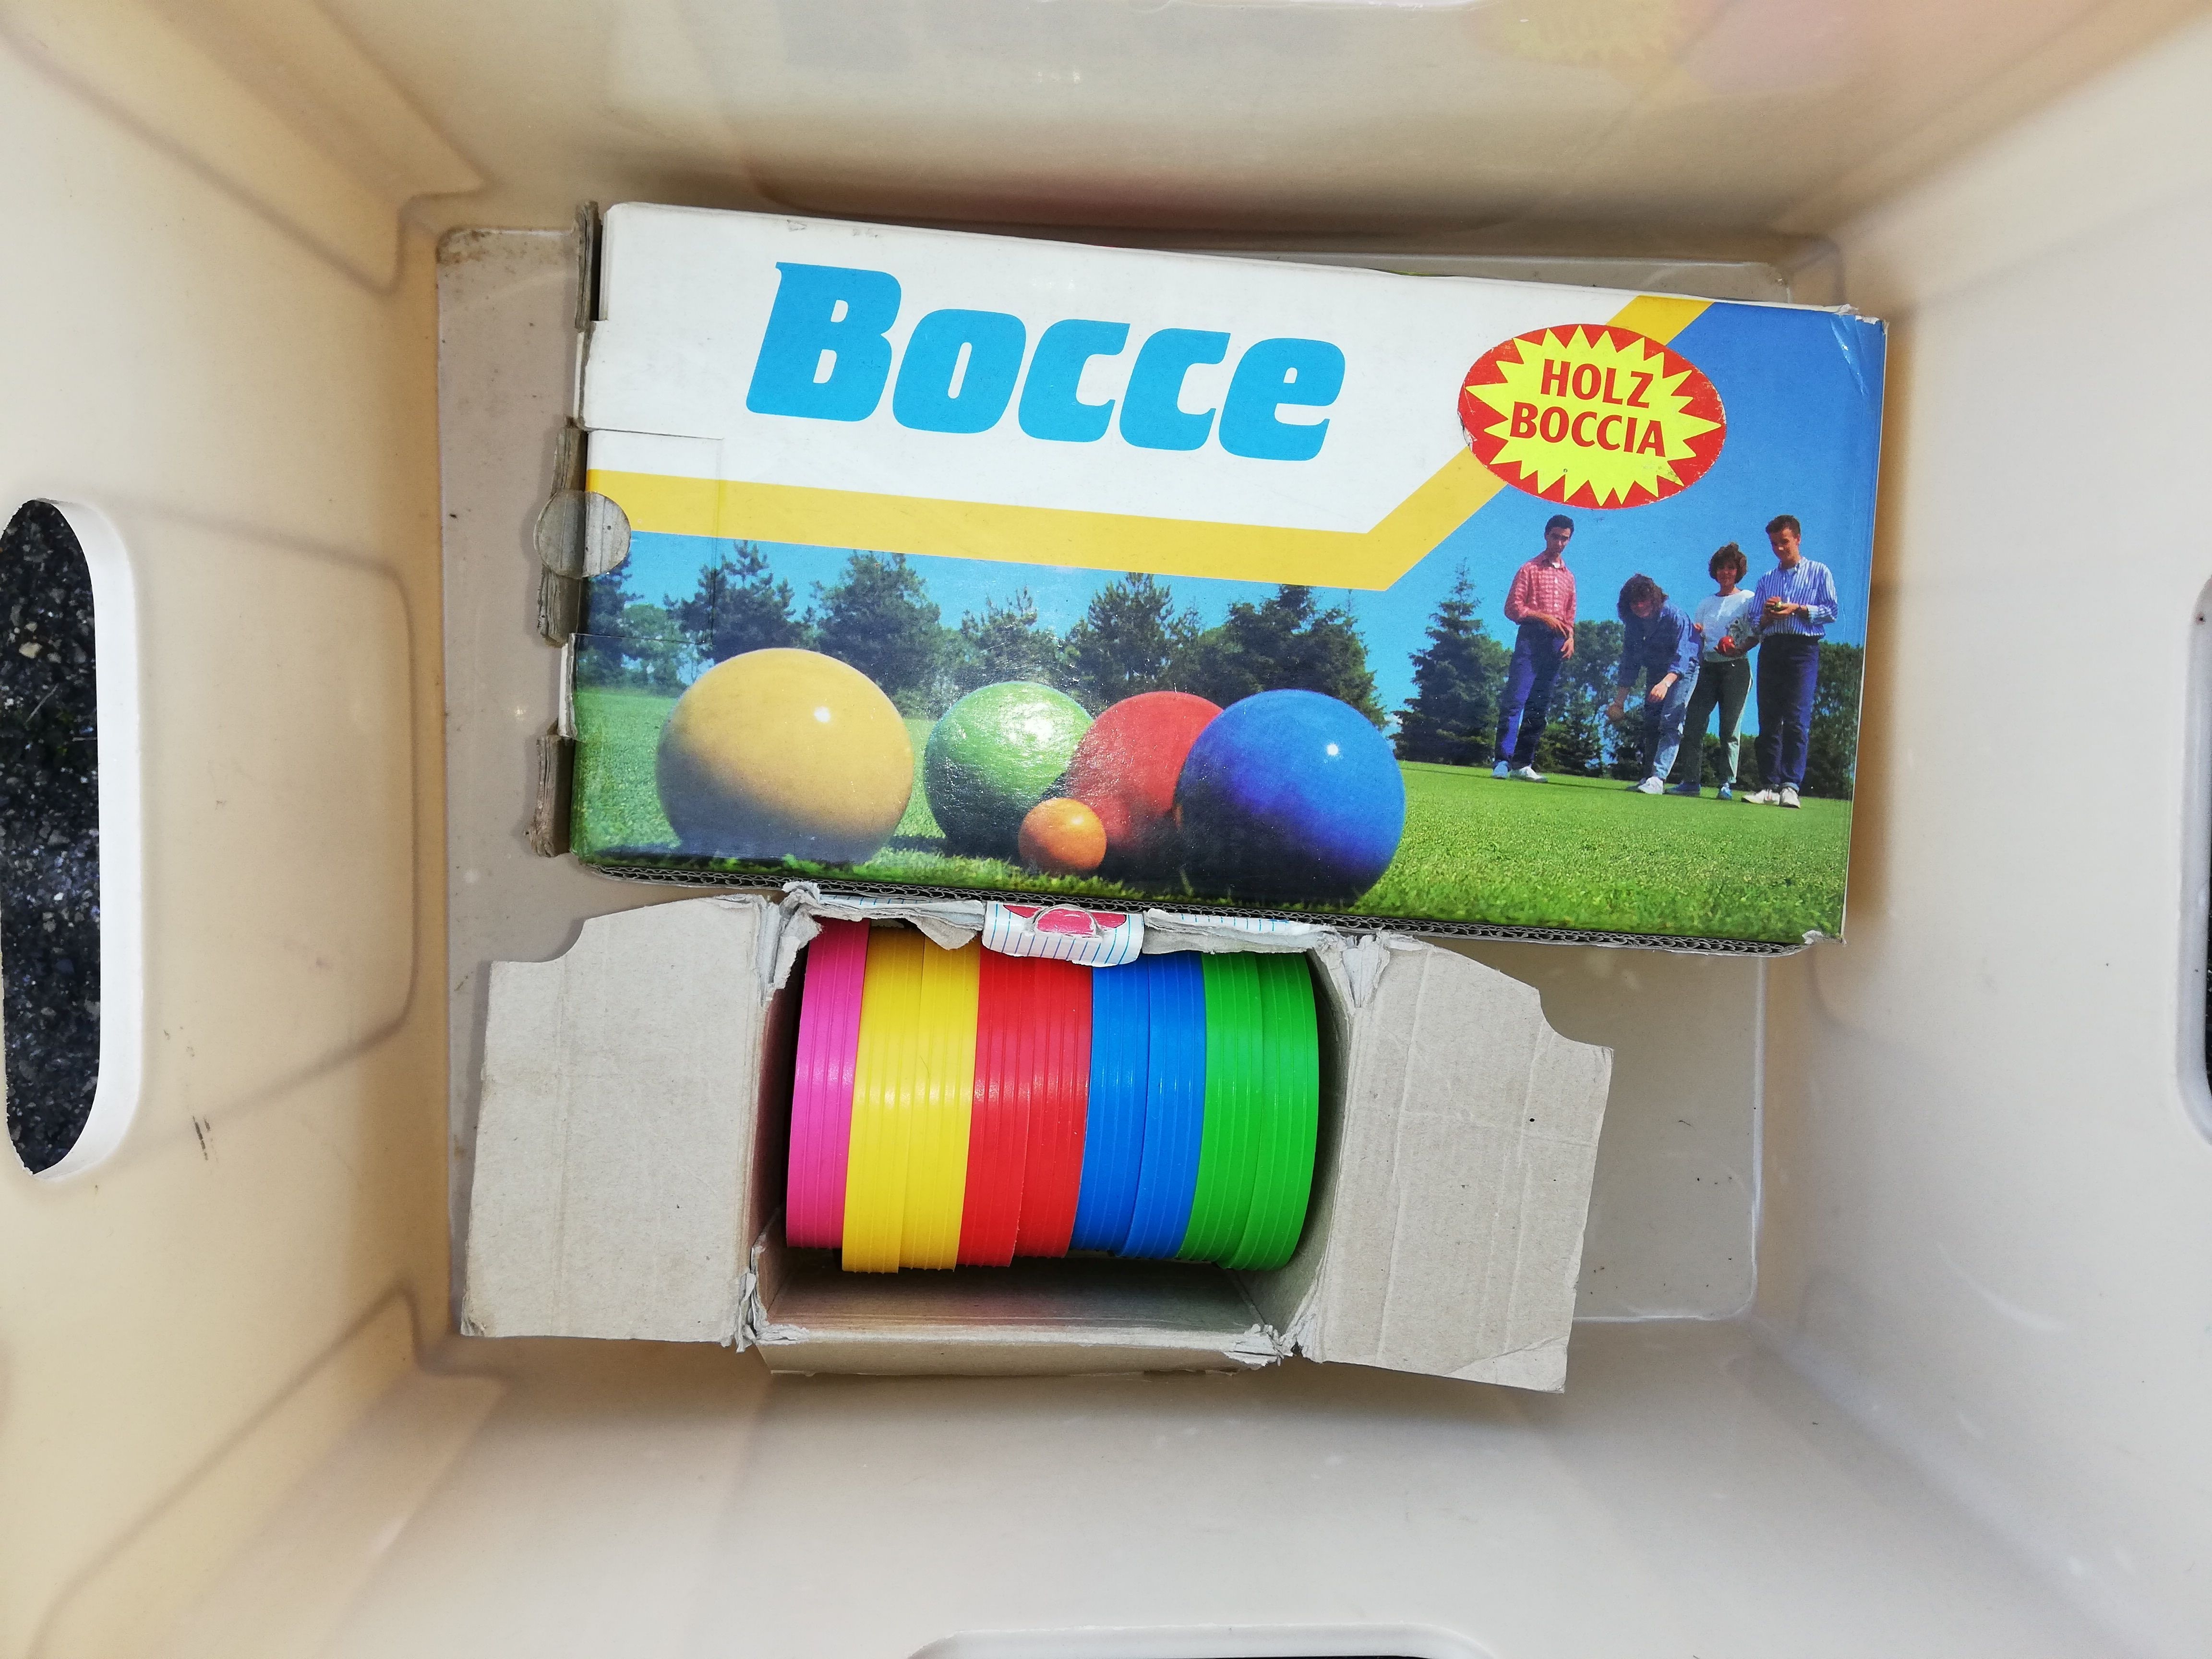 Holzboccia („Boccia“): Holz-Boccia mit 8 Kugeln (80mm) in 4 Farben lackiert, mit Zielkugel.